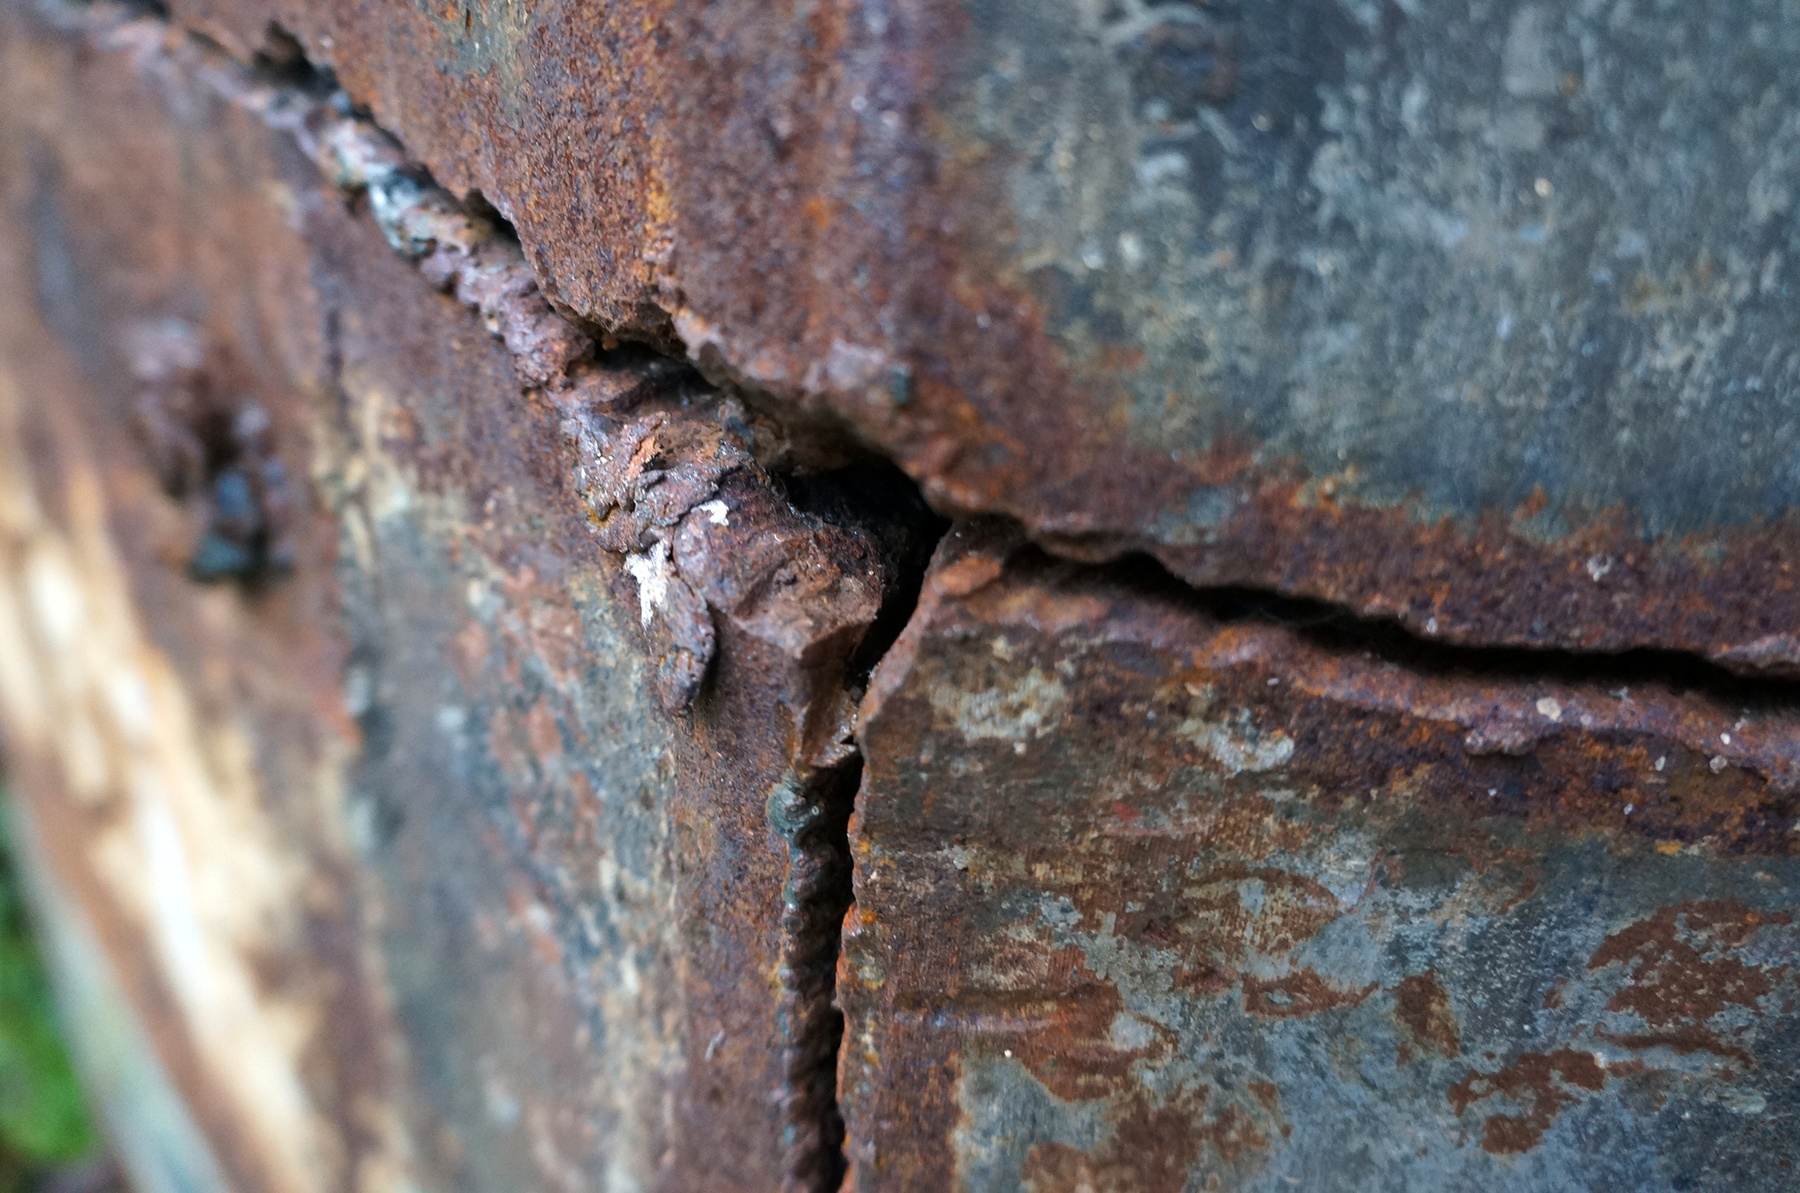 A kibontott csövek rákkeltő azbeszt-borítása szanaszét van dobálva